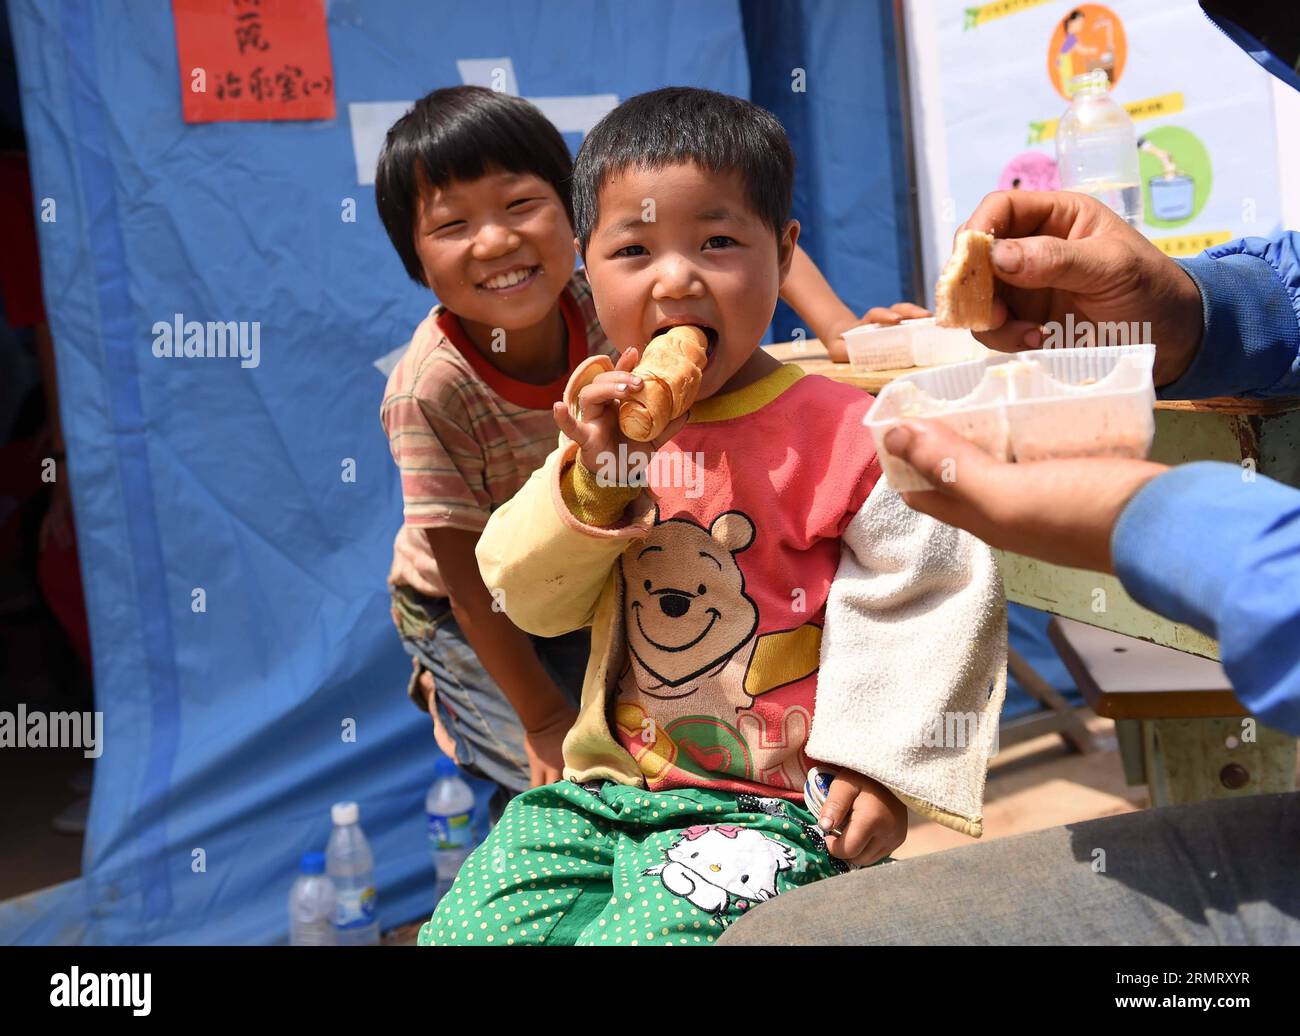 (140806) -- LUDIAN COUNTY, 6. August 2014 -- Ein Kind isst Ein Stück Brot in einer provisorischen Siedlung, die nach einem Erdbeben von 6,5 Magnitude im Ludian County von Zhaotong, südwestlich der chinesischen Provinz Yunnan, 6. August 2014 gegründet wurde. Nach dem Erdbeben in Yunnan am Sonntagnachmittag werden derzeit Katastrophenhilfe geleistet. Civillians in provisorischen Siedlungen in den am stärksten betroffenen Gebieten hatten bereits Zugang zu frischem Essen und Trinkwasser. ) (lmm) CHINA-YUNNAN-ERDBEBEN-RETTUNG-KATASTROPHENHILFE (CN) LinxYiguang PUBLICATIONxNOTxINxCHN County 6. August 2014 ein Kind isst ein Stück BROT im Sturm Stockfoto